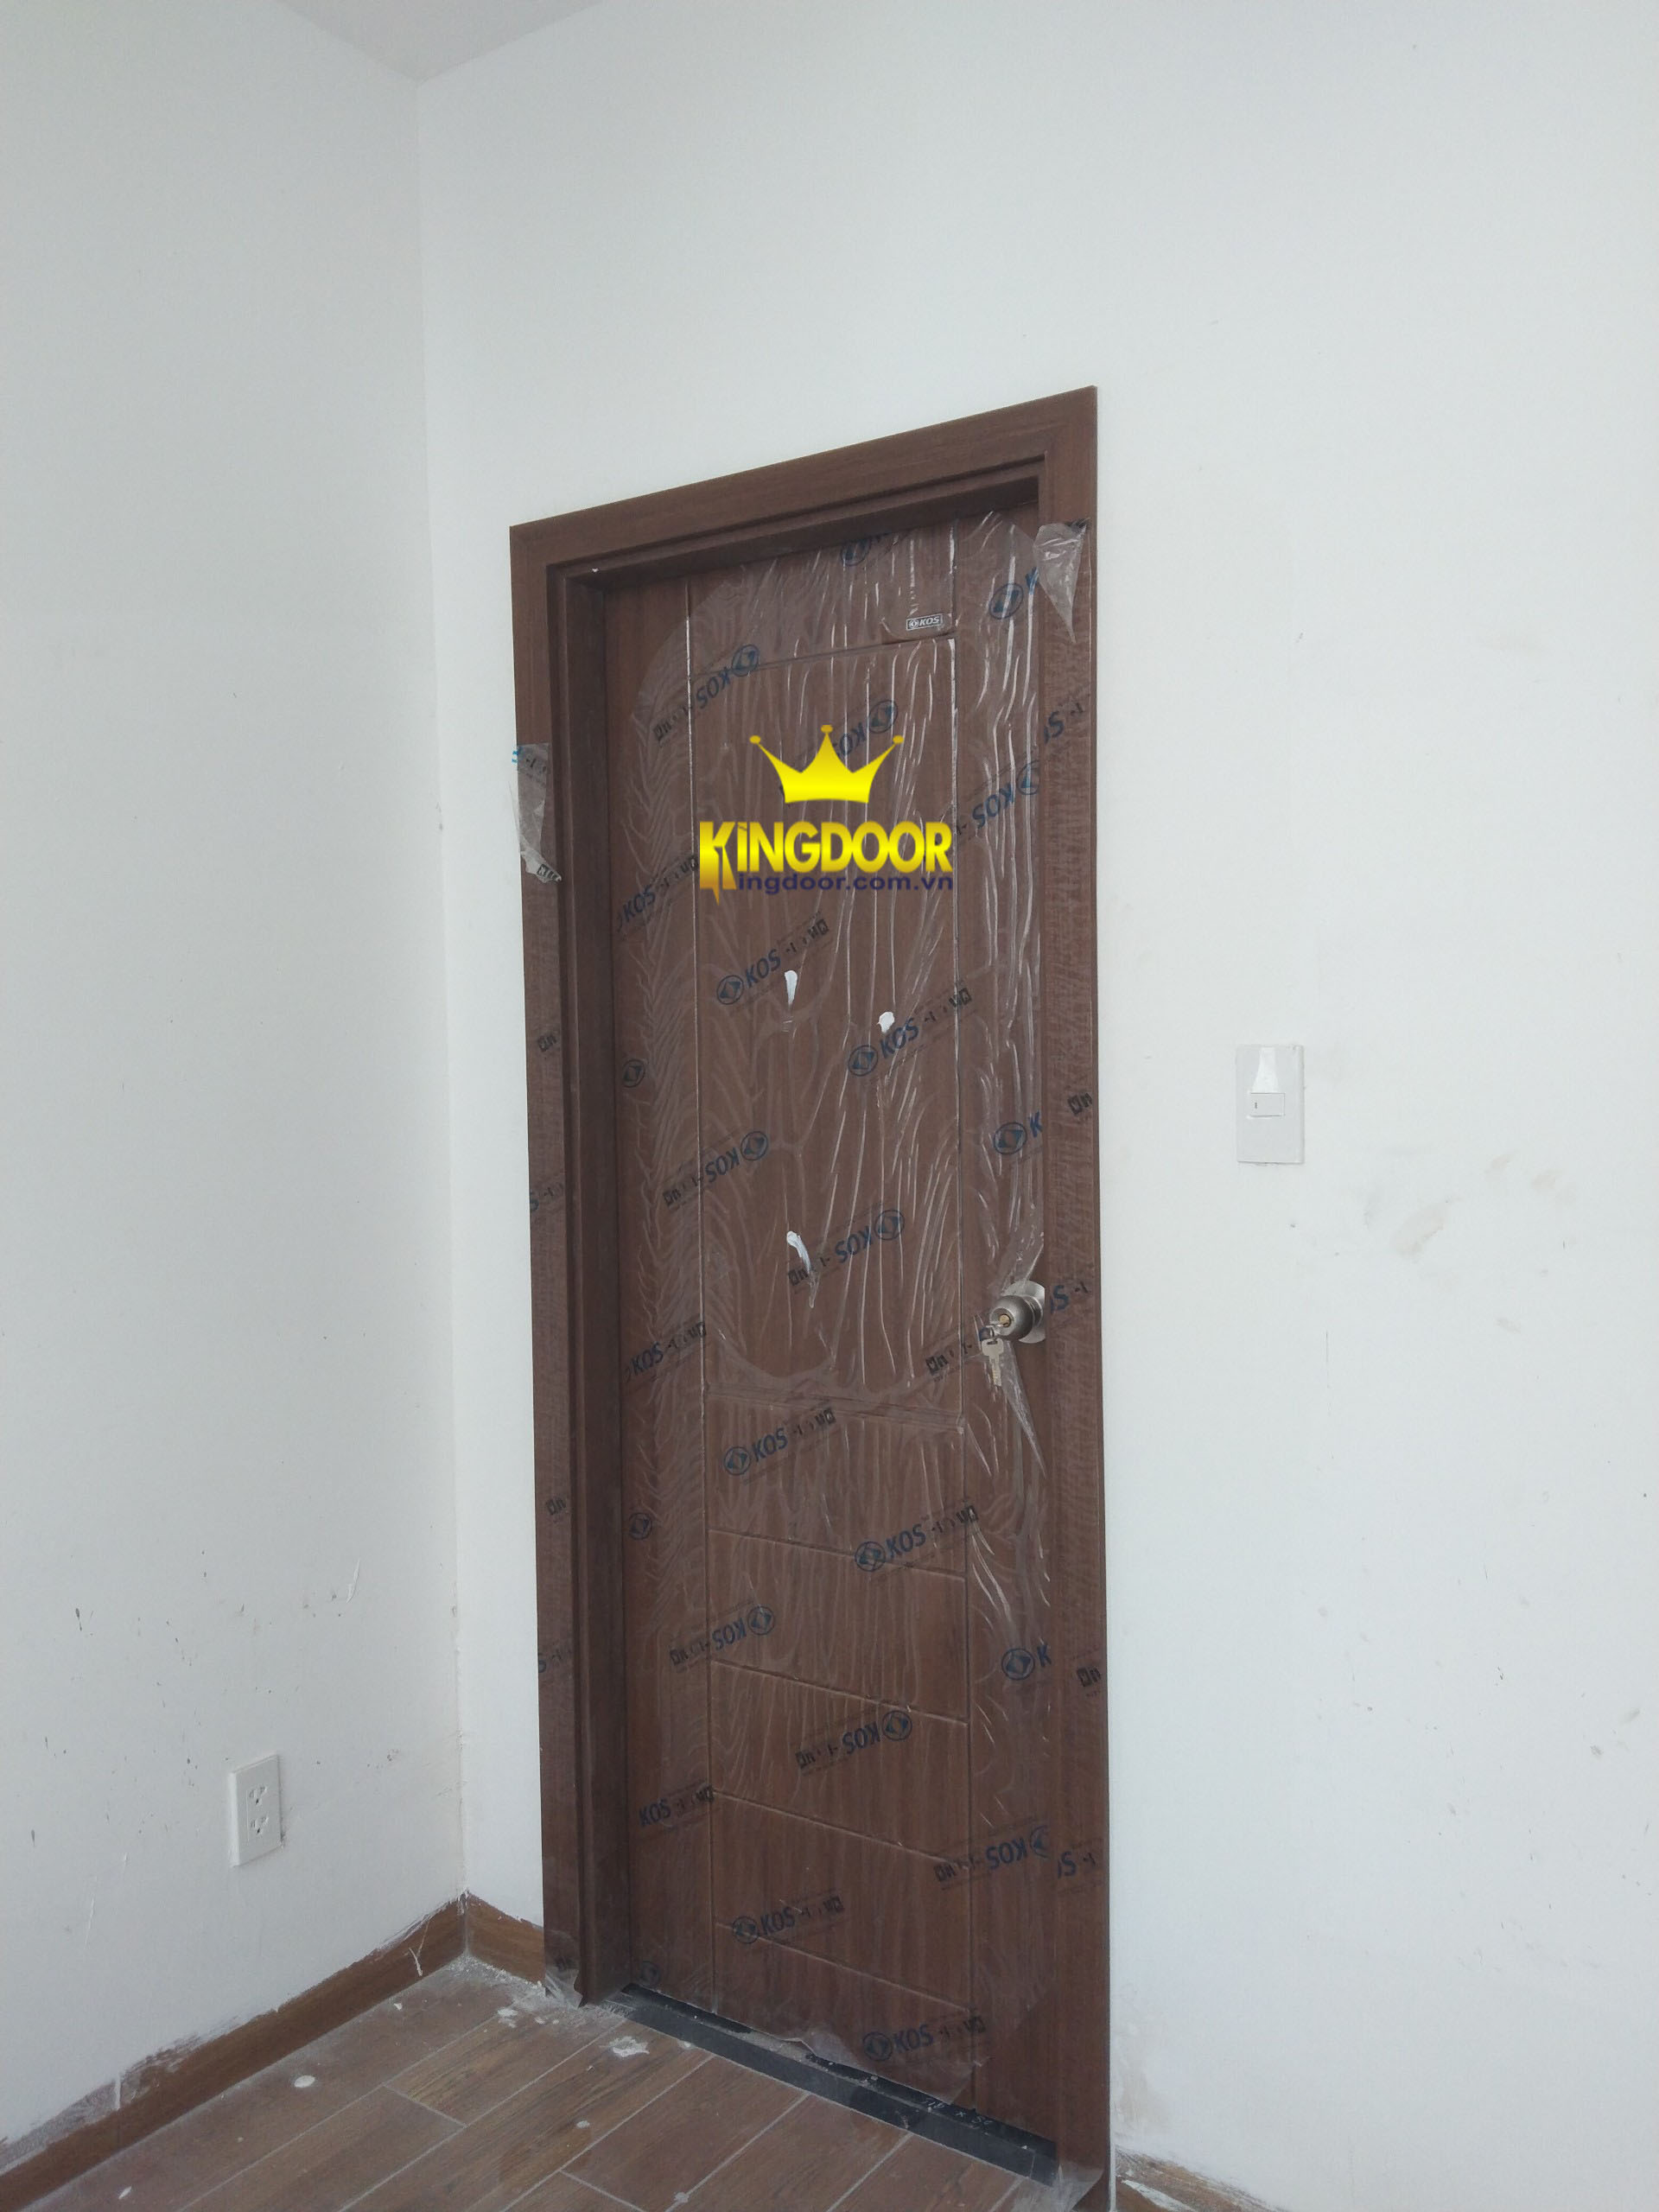 Cửa phòng ngủ ABS Hàn Quốc